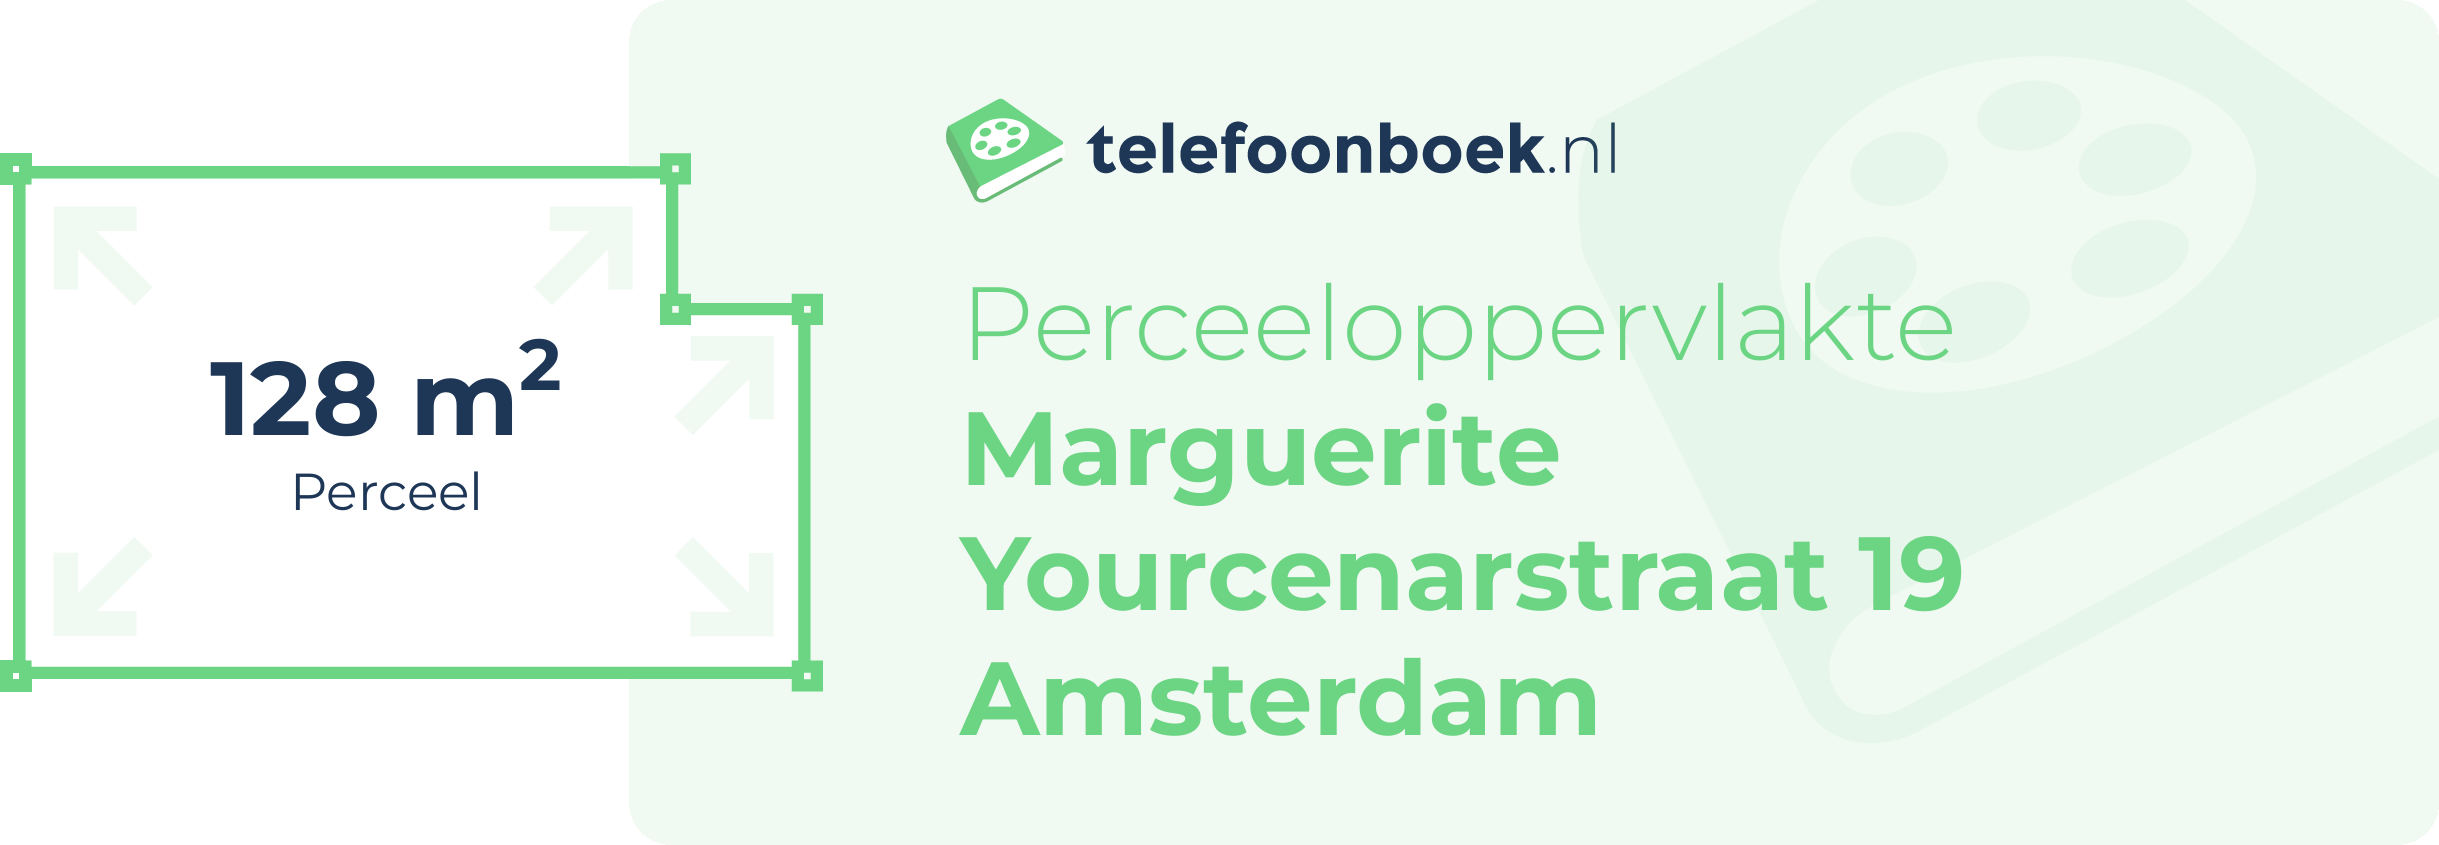 Perceeloppervlakte Marguerite Yourcenarstraat 19 Amsterdam